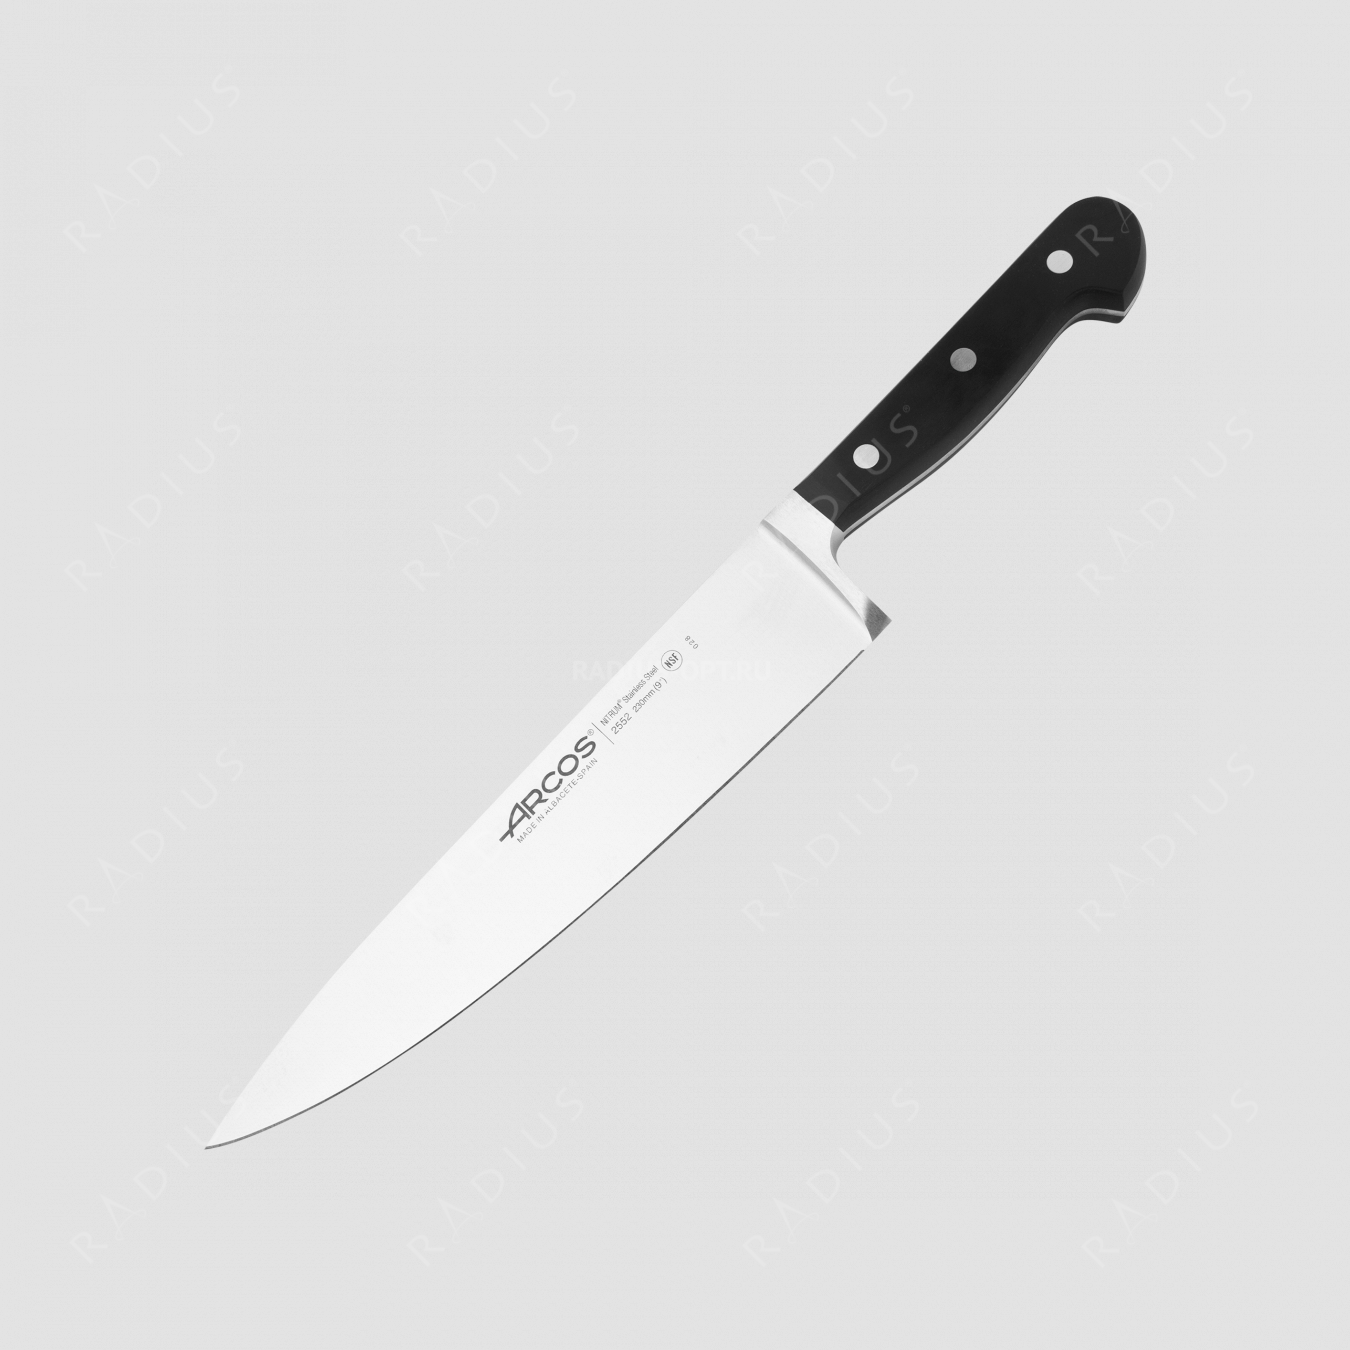 Профессиональный поварской кухонный нож 23 см, серия Clasica, ARCOS, Испания